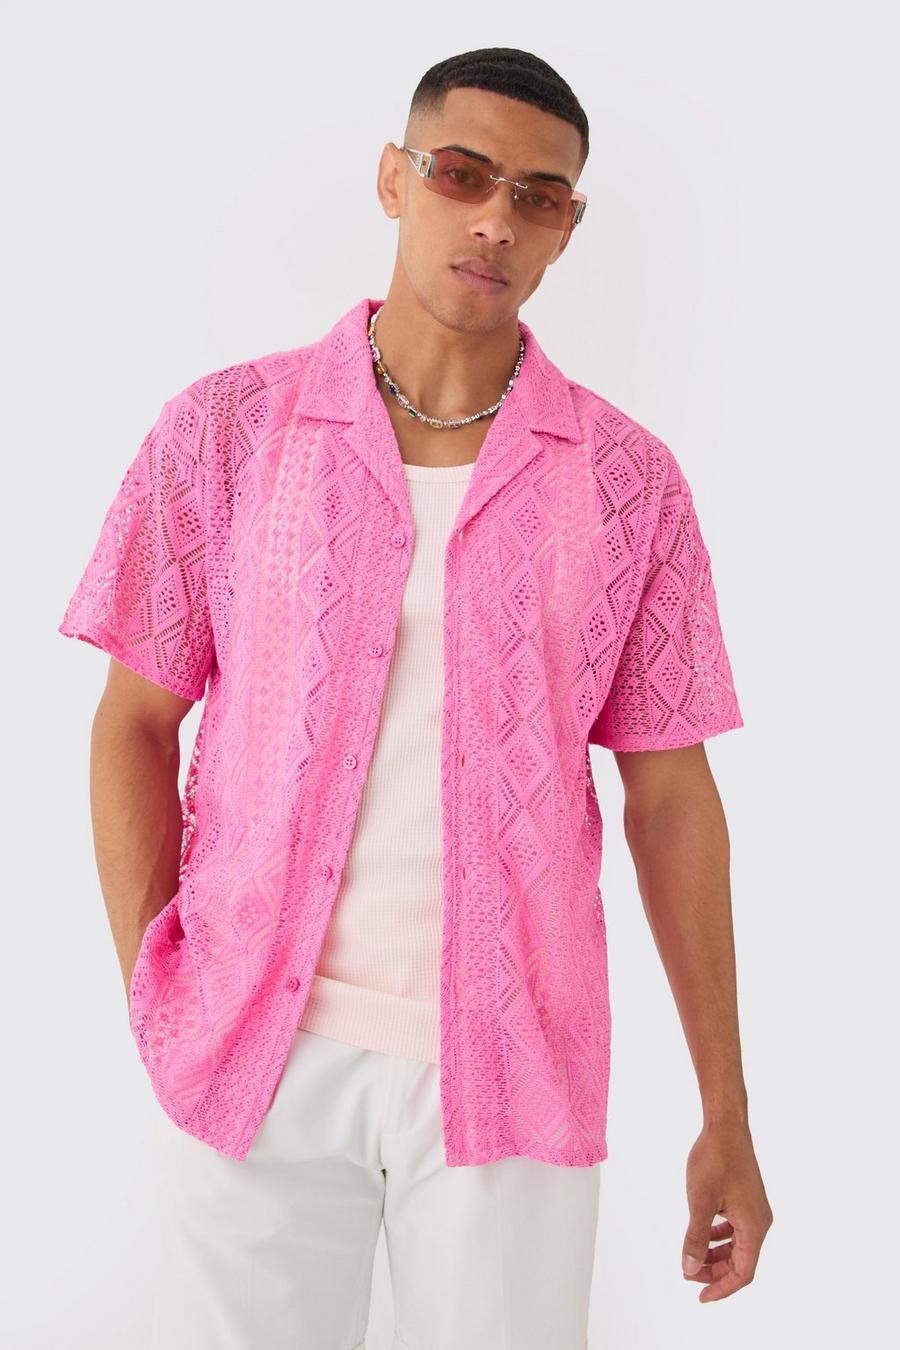 Kastiges gehäkeltes Hemd, Hot pink